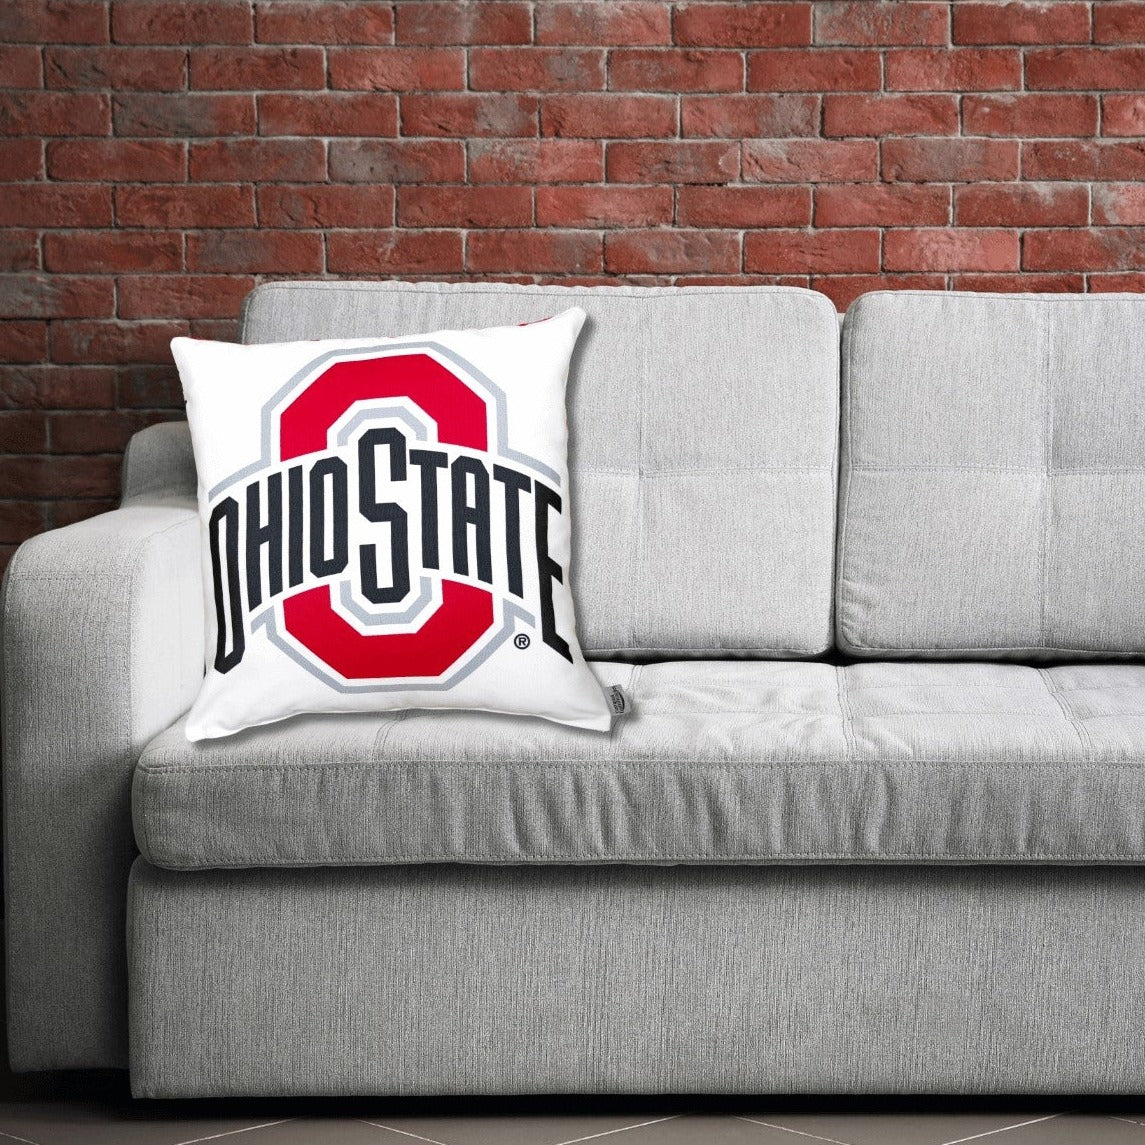 Ohio State Logo Pillow On A sofa